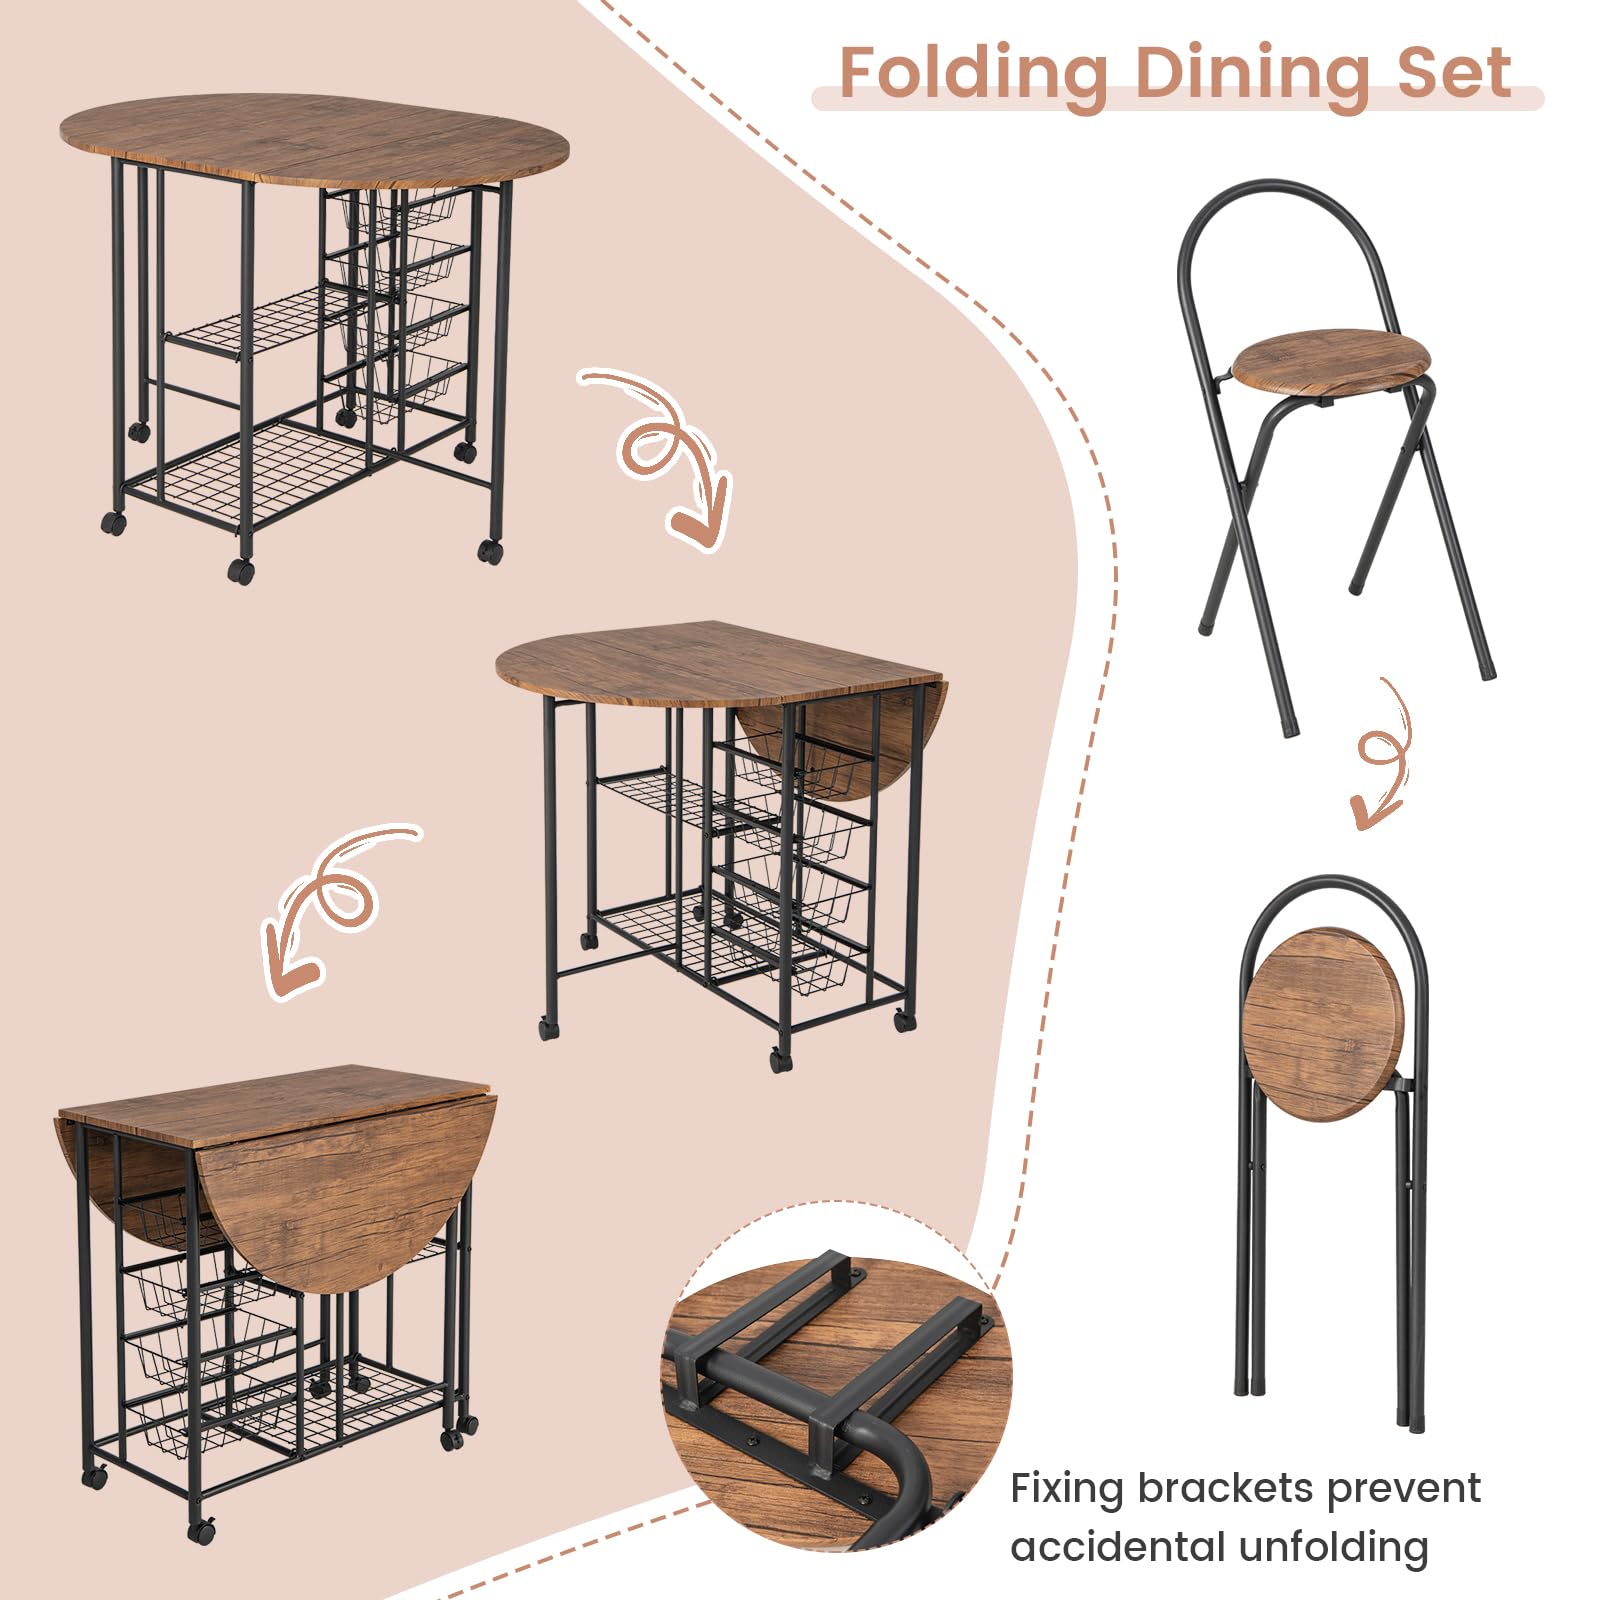 3PCS Folding Dining Table Set - Giantex